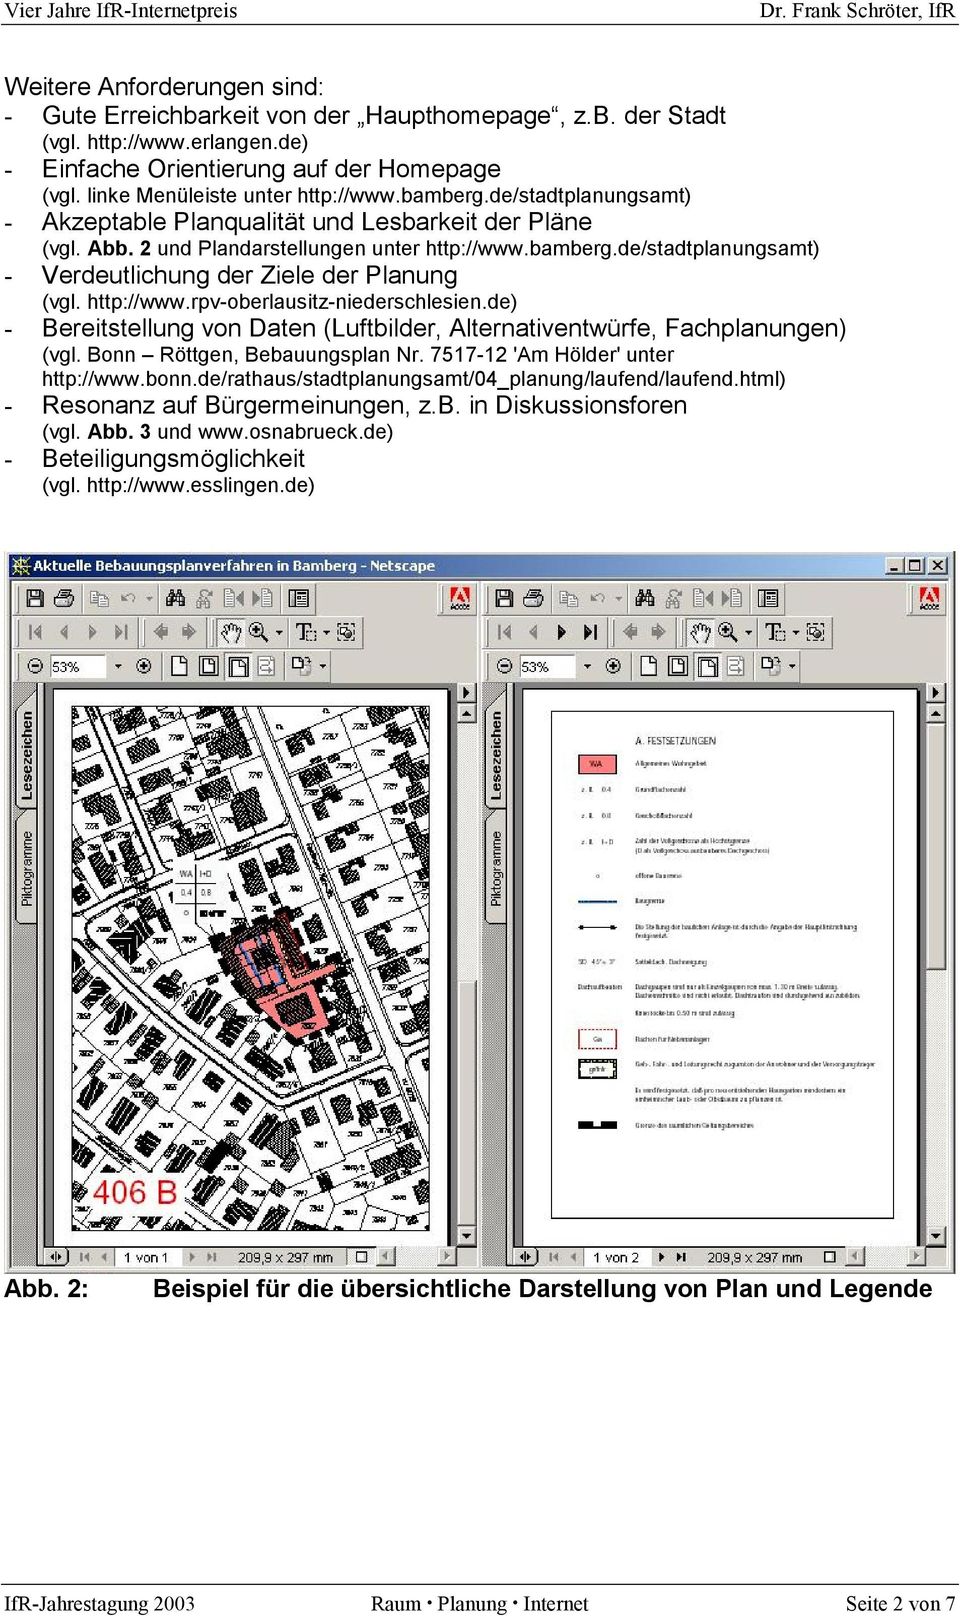 http://www.rpv-oberlausitz-niederschlesien.de) - Bereitstellung von Daten (Luftbilder, Alternativentwürfe, Fachplanungen) (vgl. Bonn Röttgen, Bebauungsplan Nr. 7517-12 'Am Hölder' unter http://www.